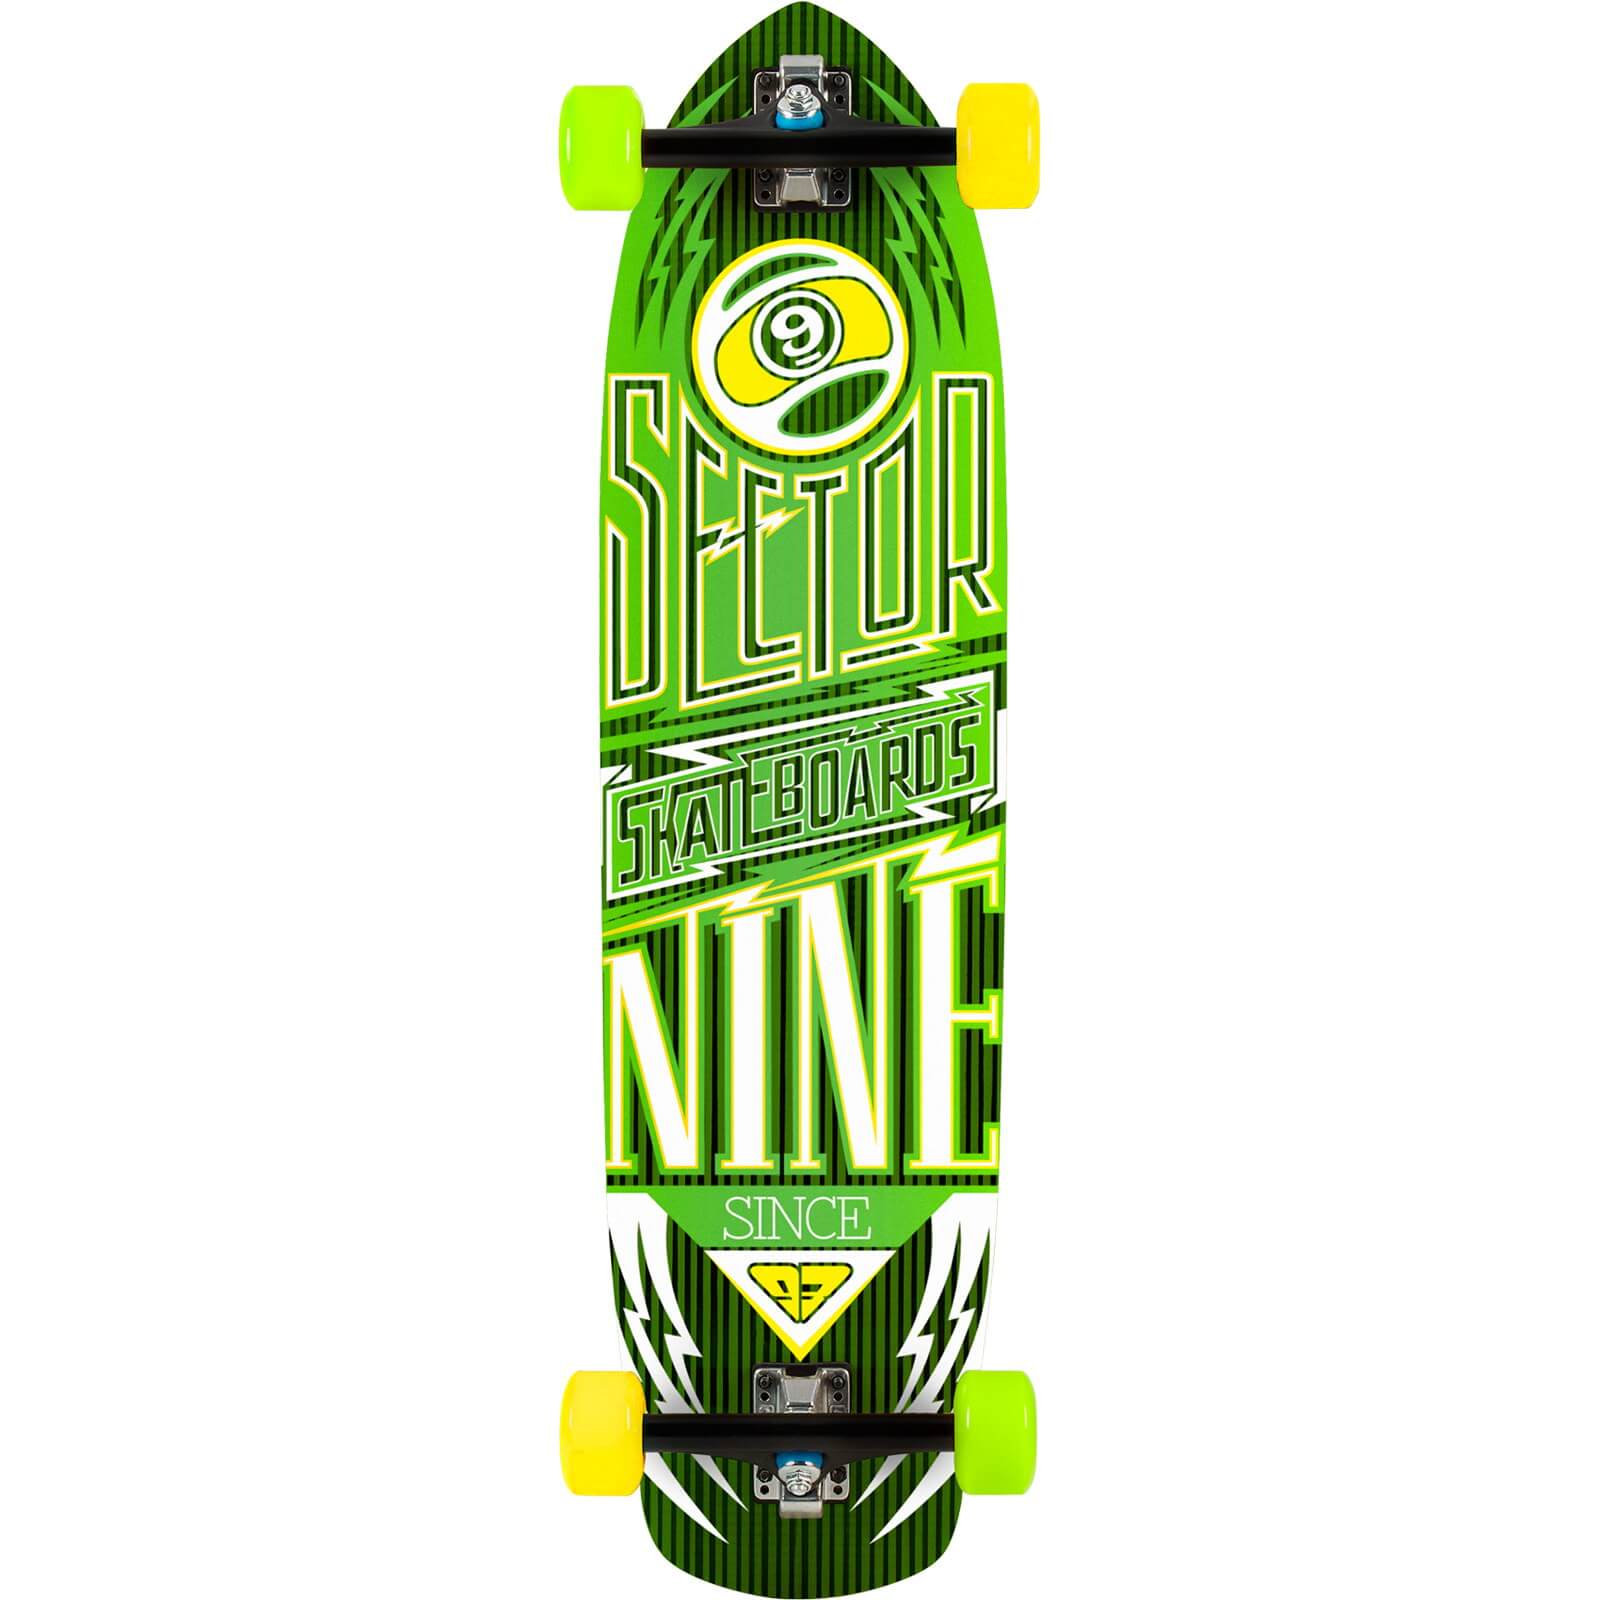 Fiberglass Carbon Flight Green Complete Skateboard - 9.25" x 36"